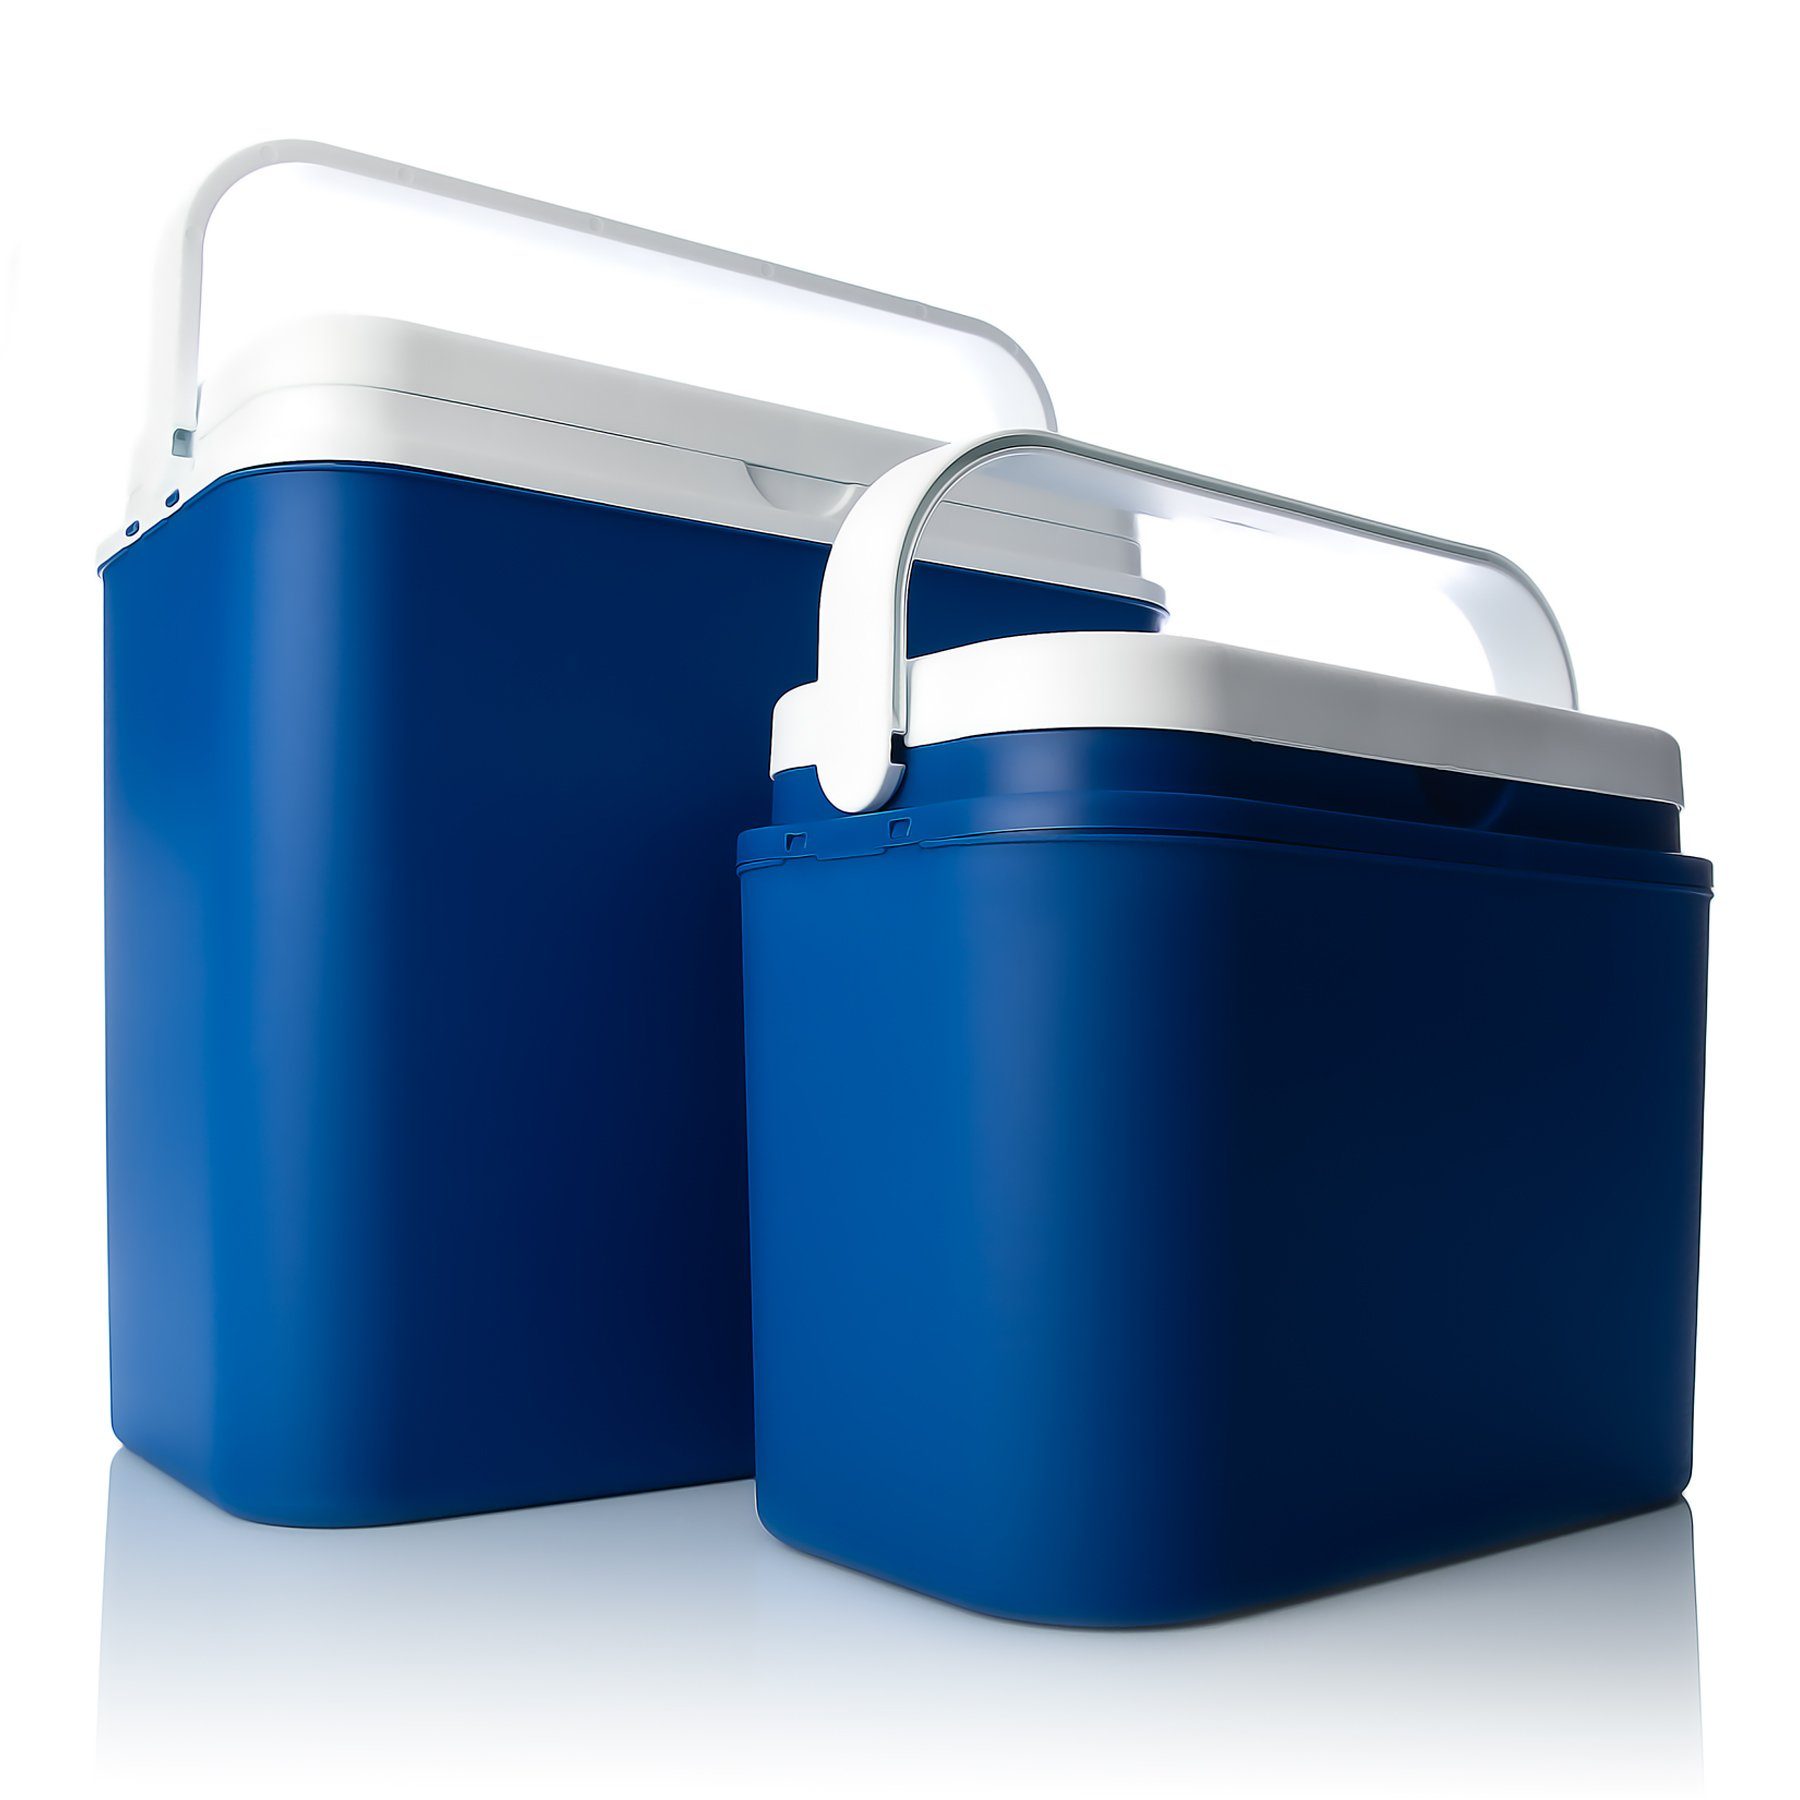 BigDean Thermobehälter Kühlboxen Set 24L + 10L Gefrierbox Kühltasche Made in EU, PP-Kunststoff, (2-tlg) Blau/weiß